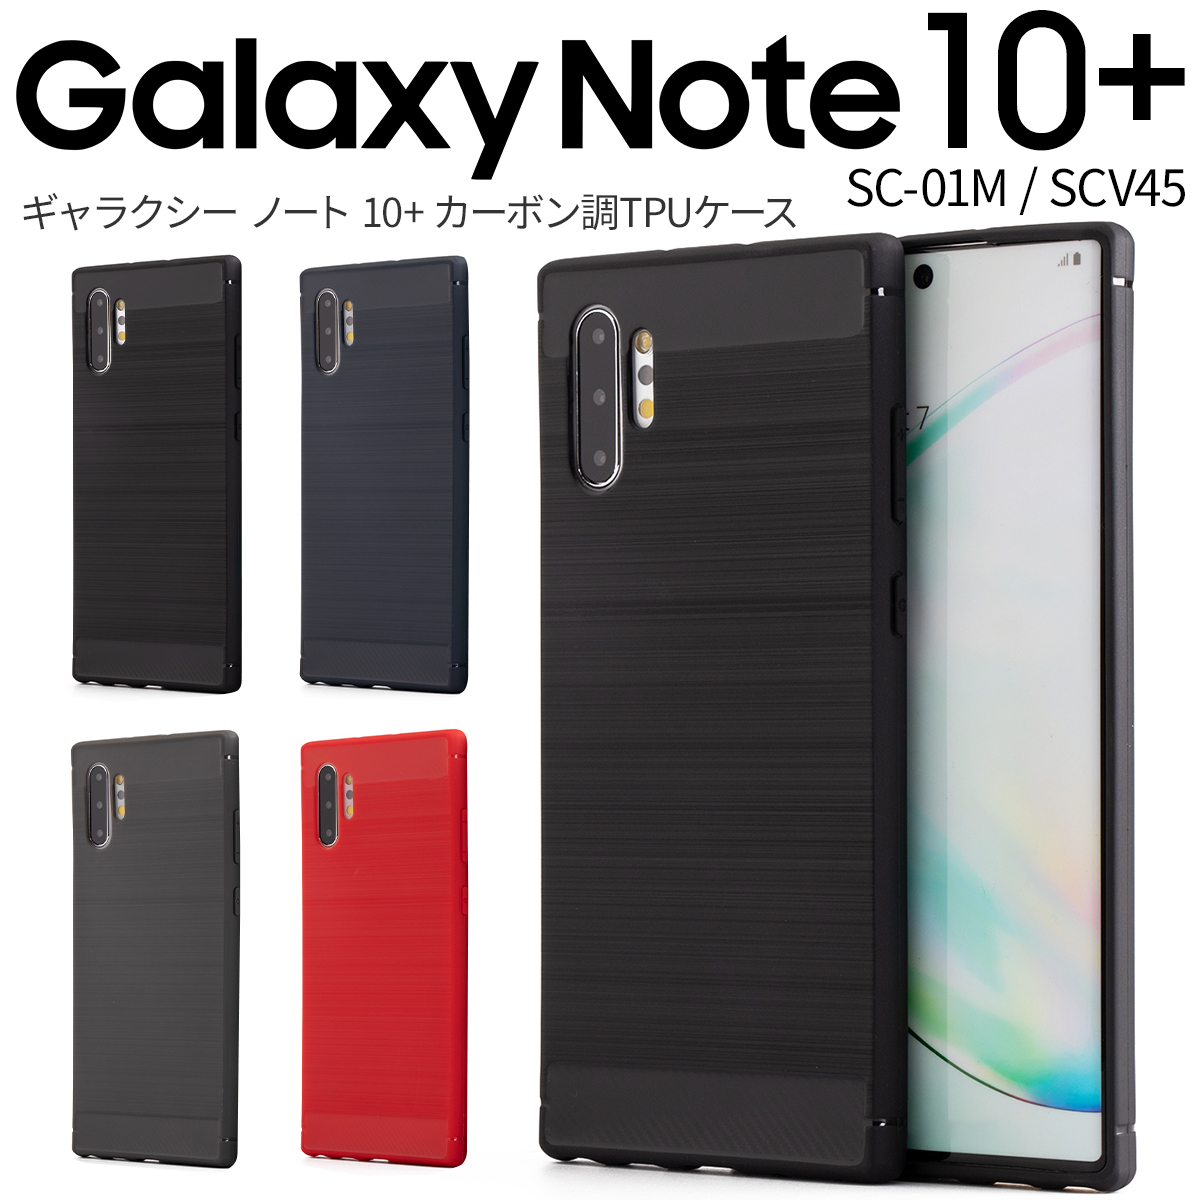 楽天市場 最大30 Offクーポン Galaxy Note10 ケース Galaxy Note10 Sc 01m ケース スマホケース 韓国 Sc 01m Scv45 スマホ ケース カバー シンプル おしゃれ かっこいい 人気 おすすめ ギャラクシー ノート10 レザー調tpuケース Sale ソフトケース 名入れスマホ